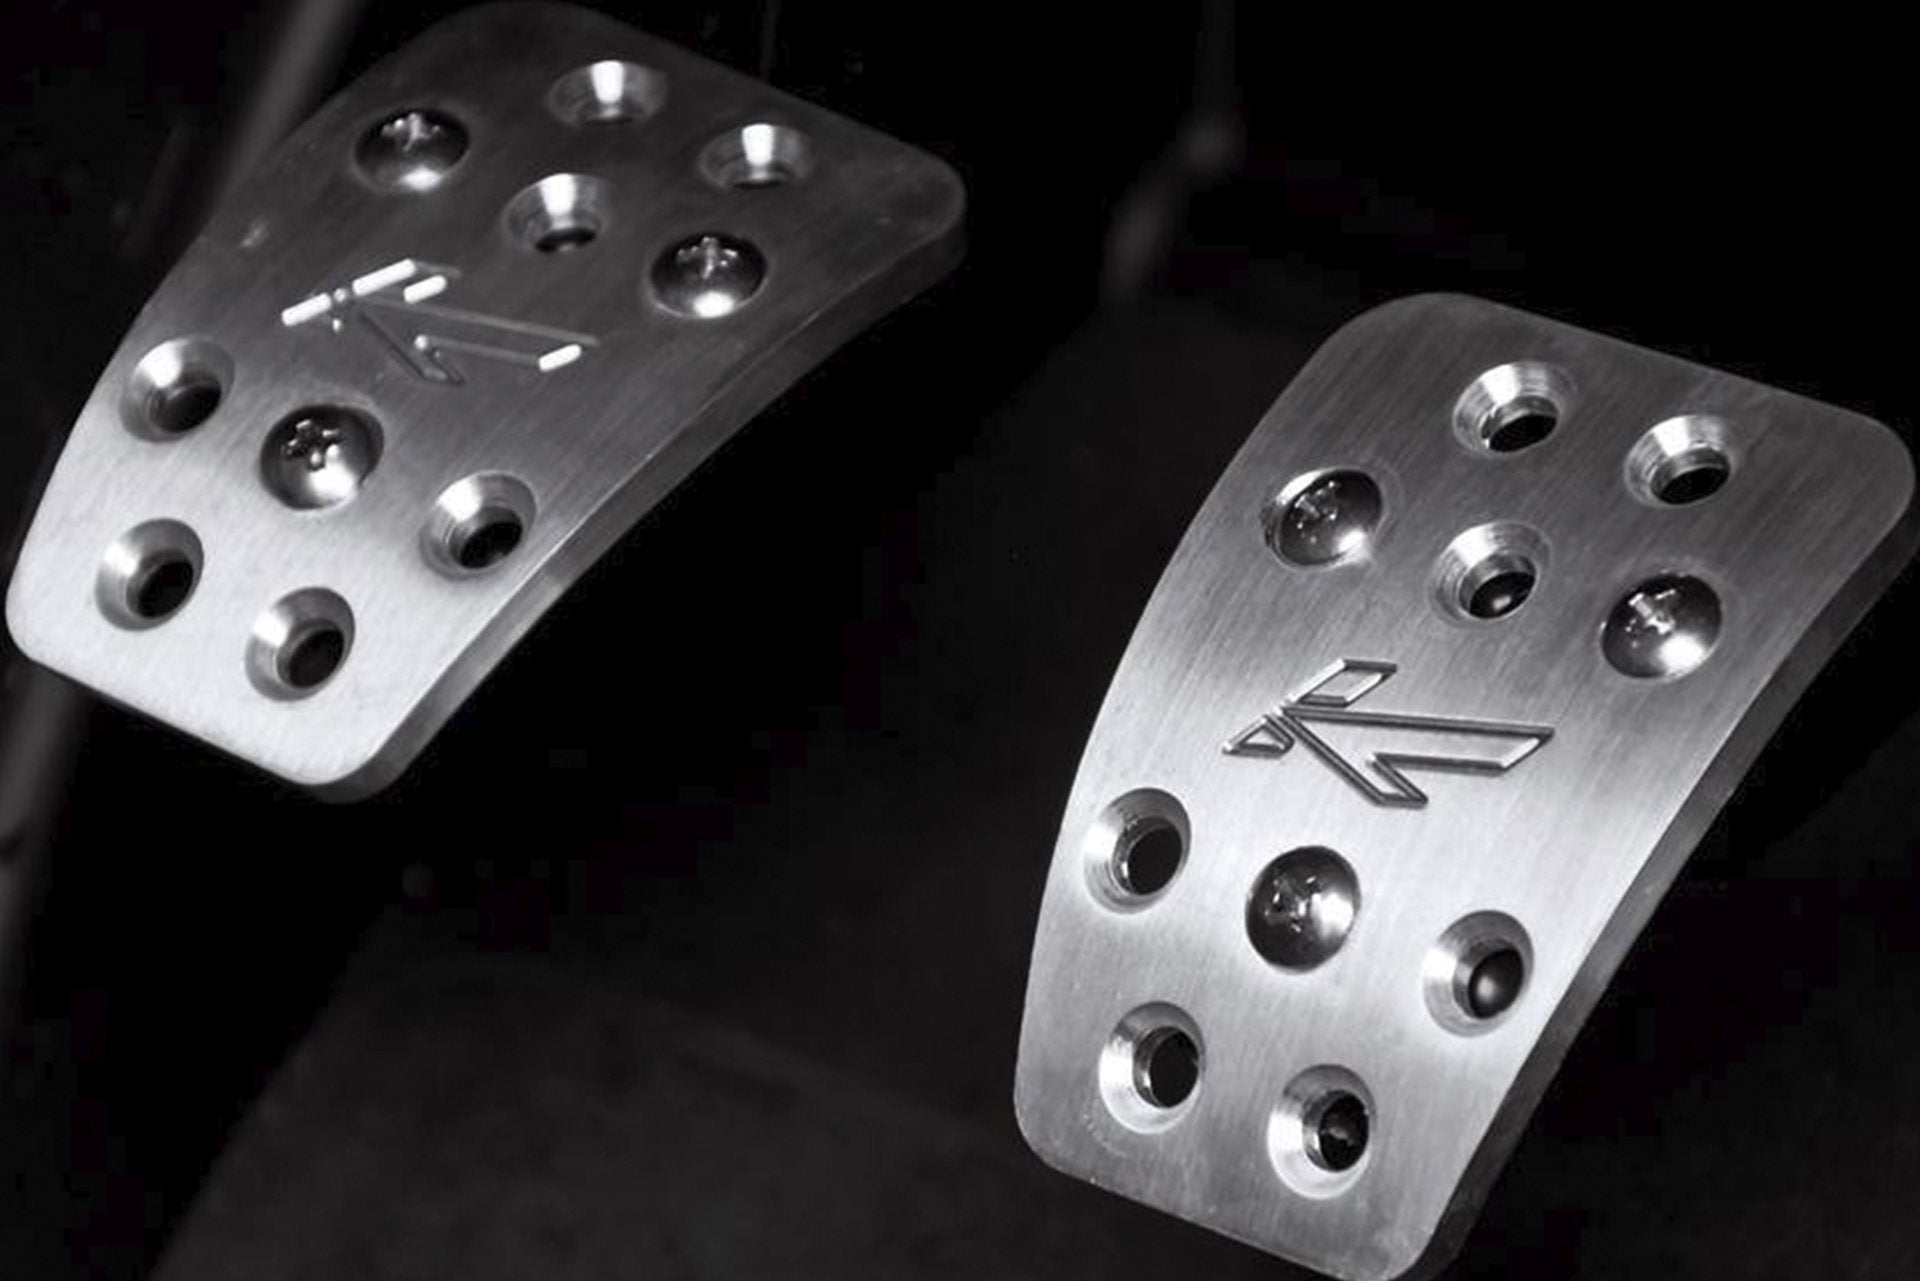 Audi Q7 (2006-2016) Vented Foot Pedals In Machined Aluminium Image 4483